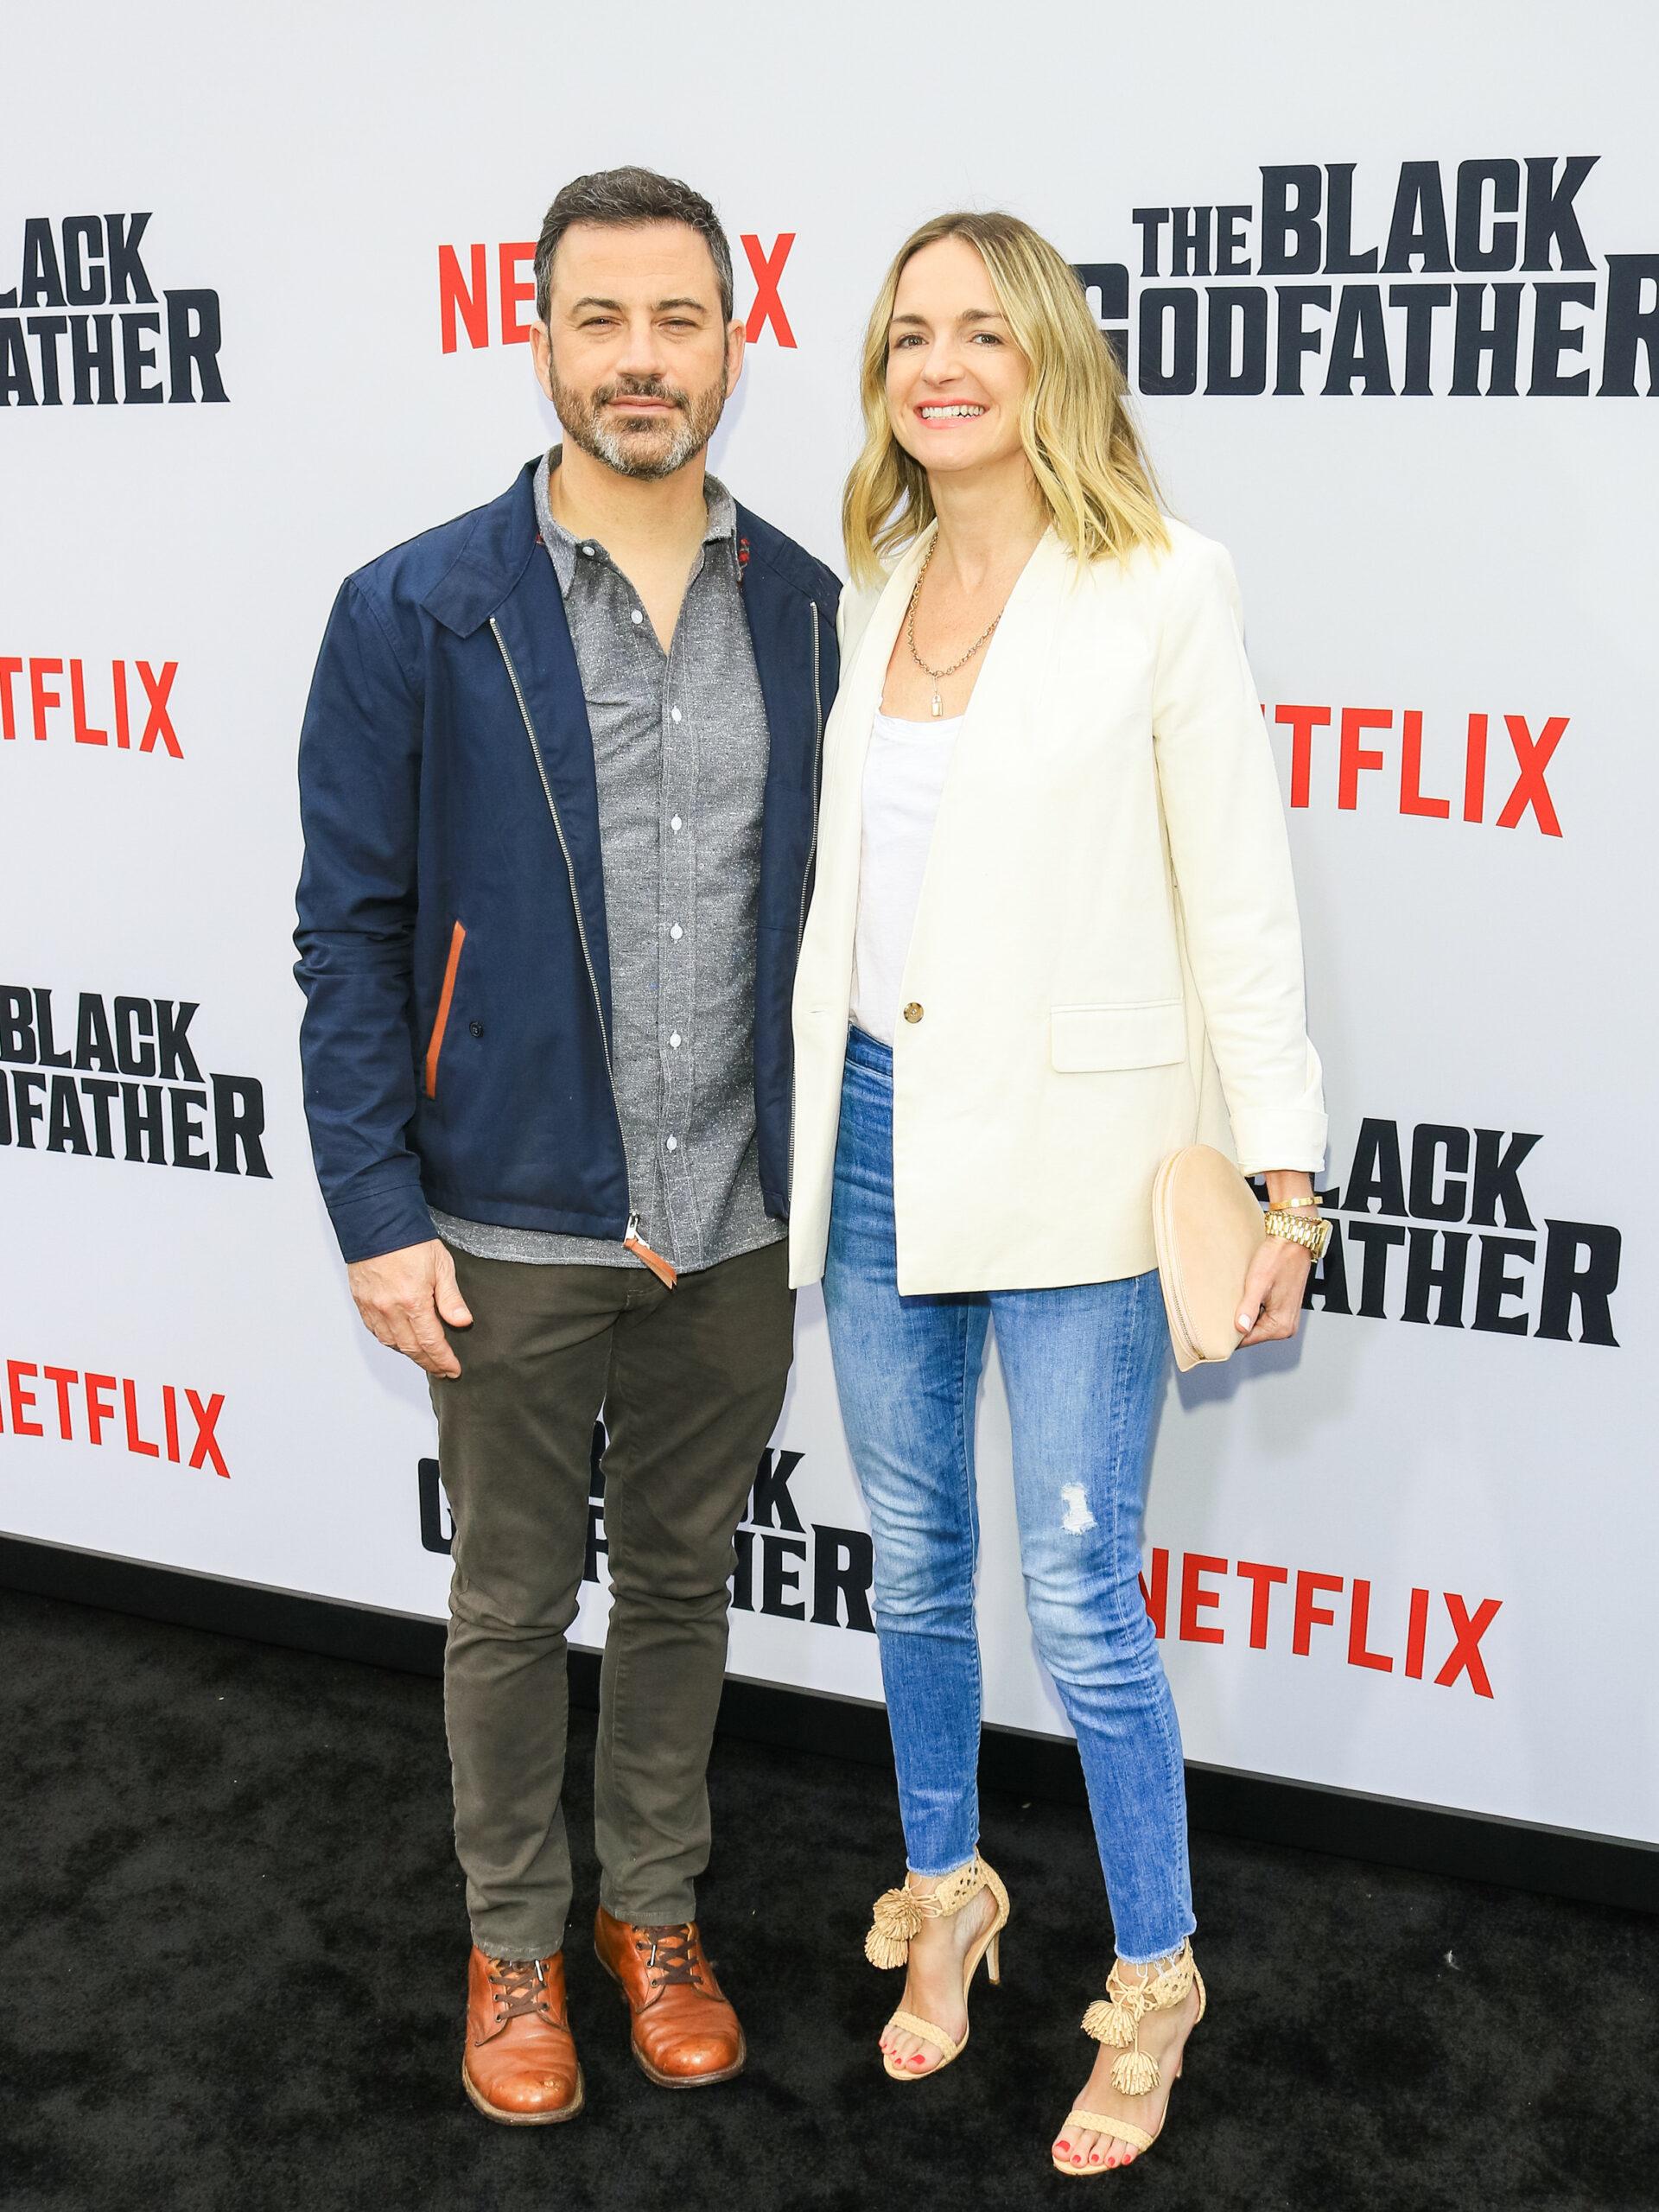 Netflix World Premiere of apos The Black Godfather apos